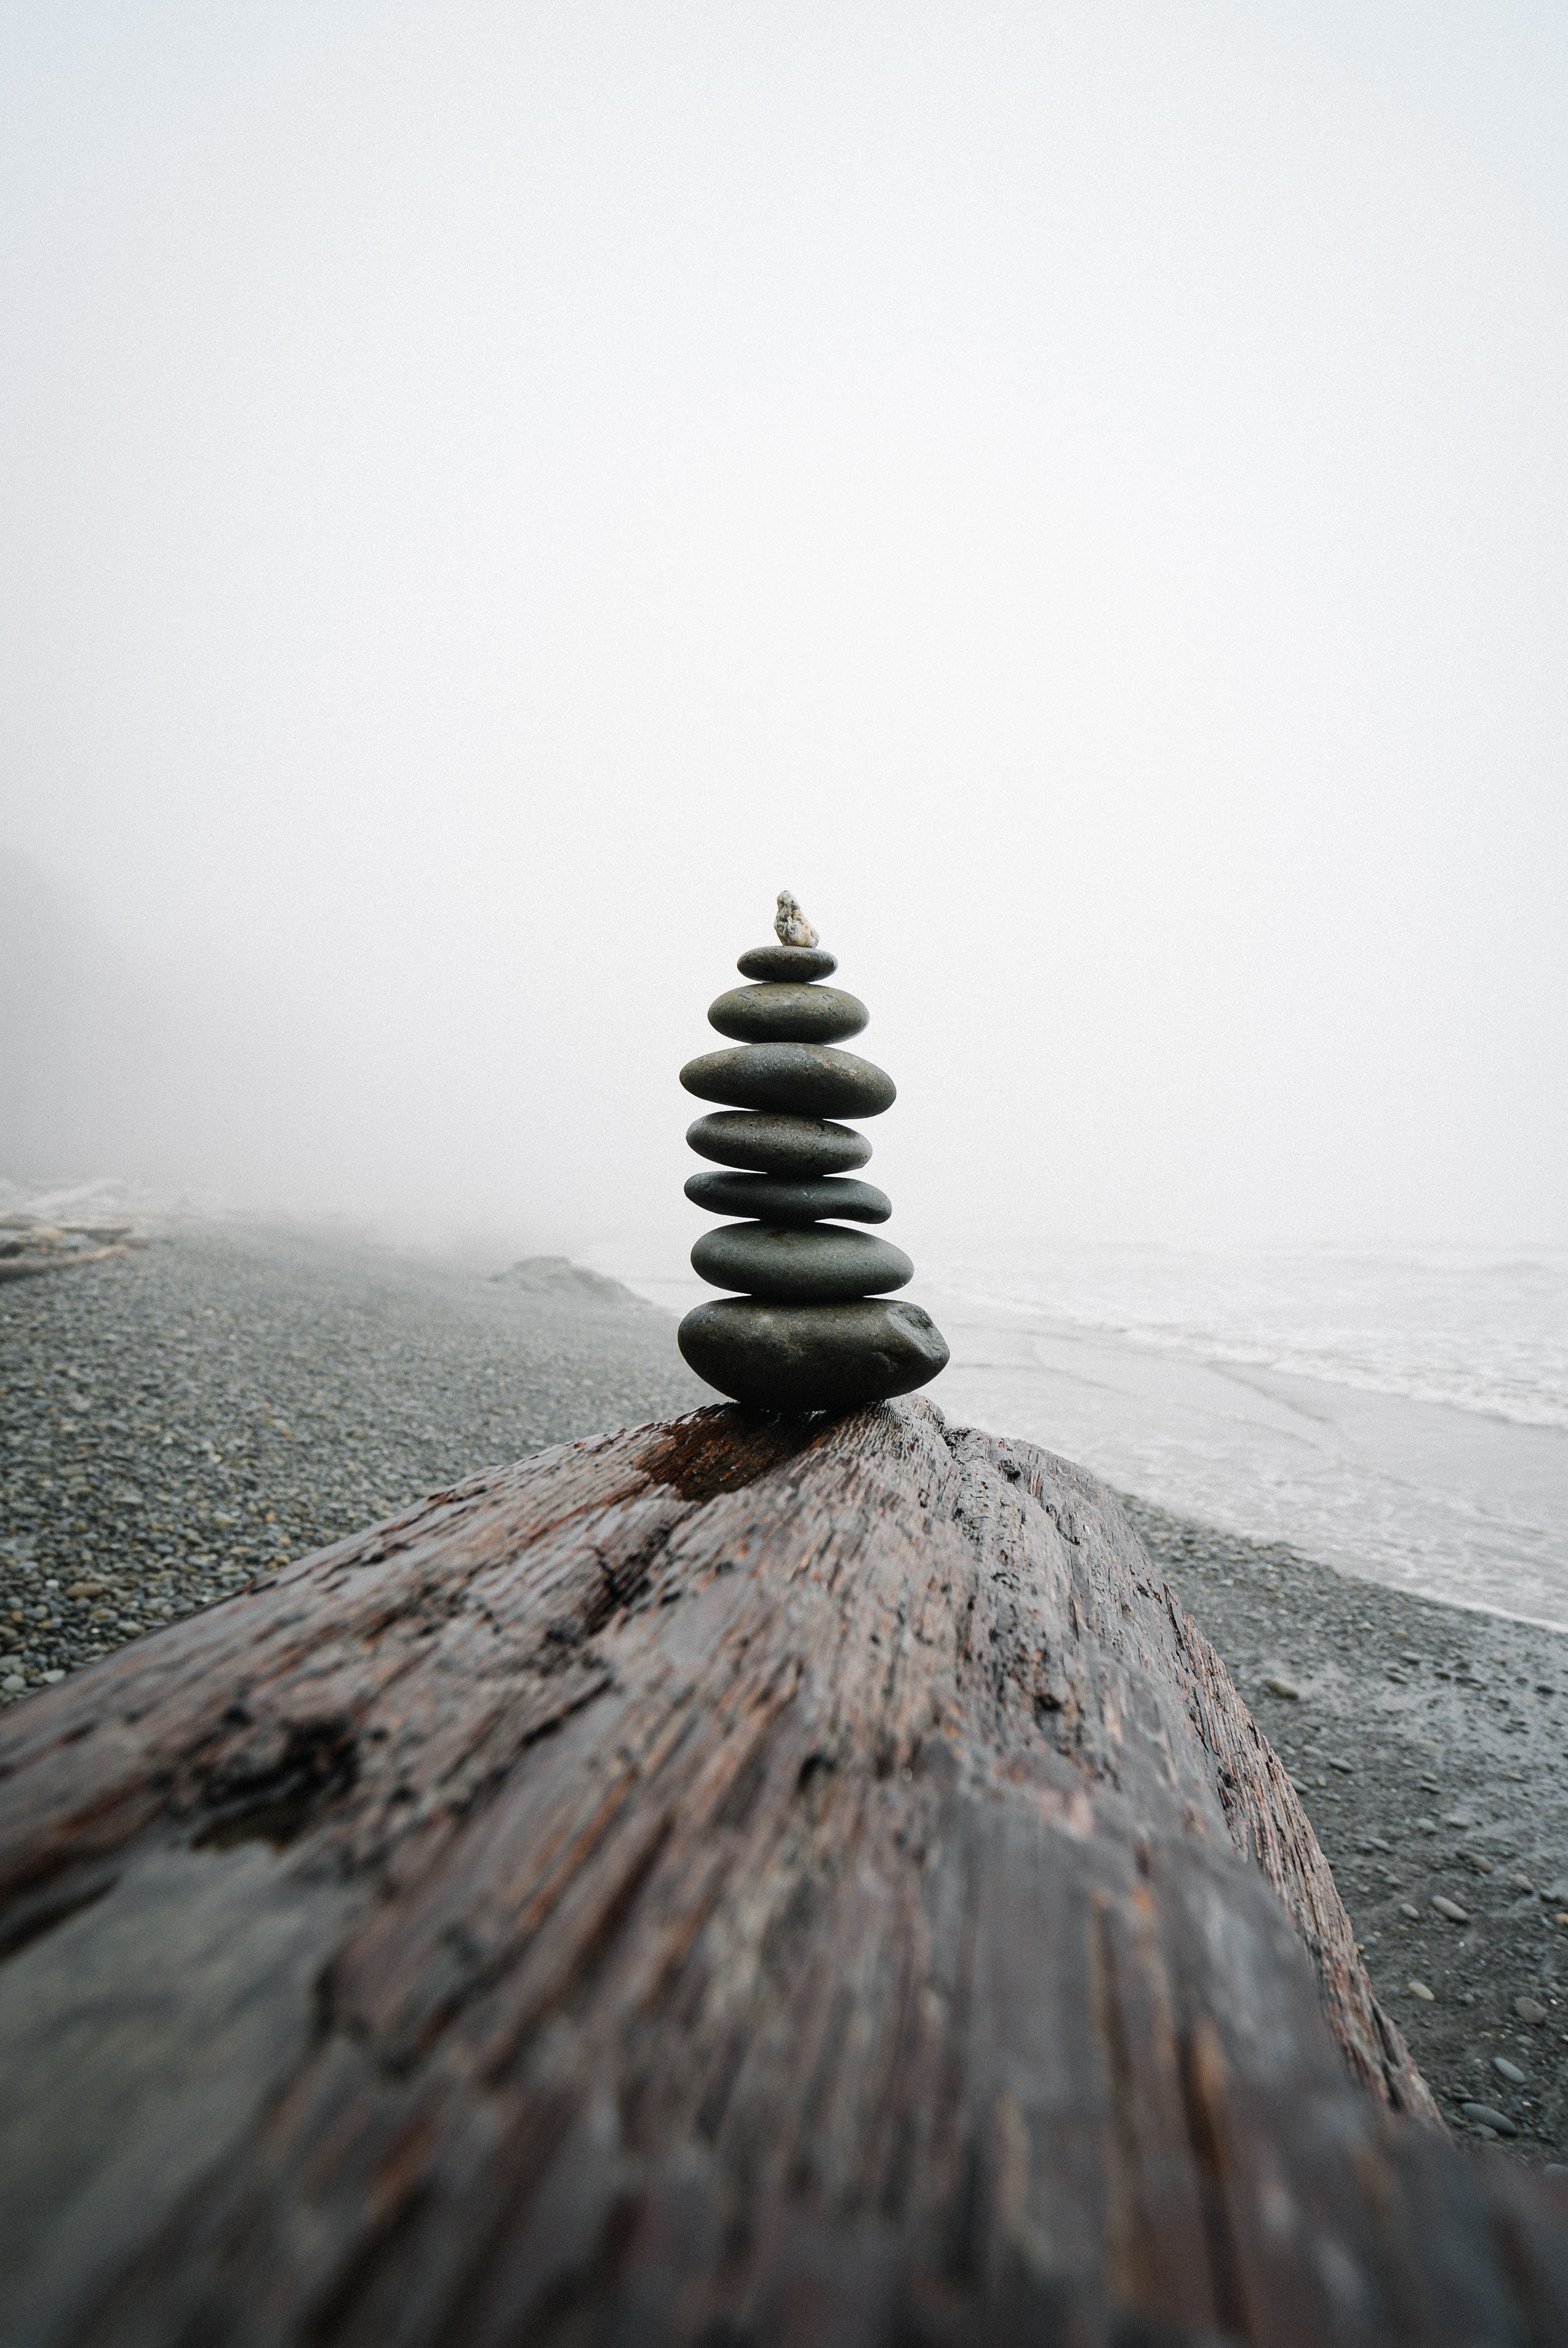 7 flache, dunkle Steine stehen aufeinander gestapelt 
                                                                                                                           auf einem Holzbrett am Strand vor dem Meer.